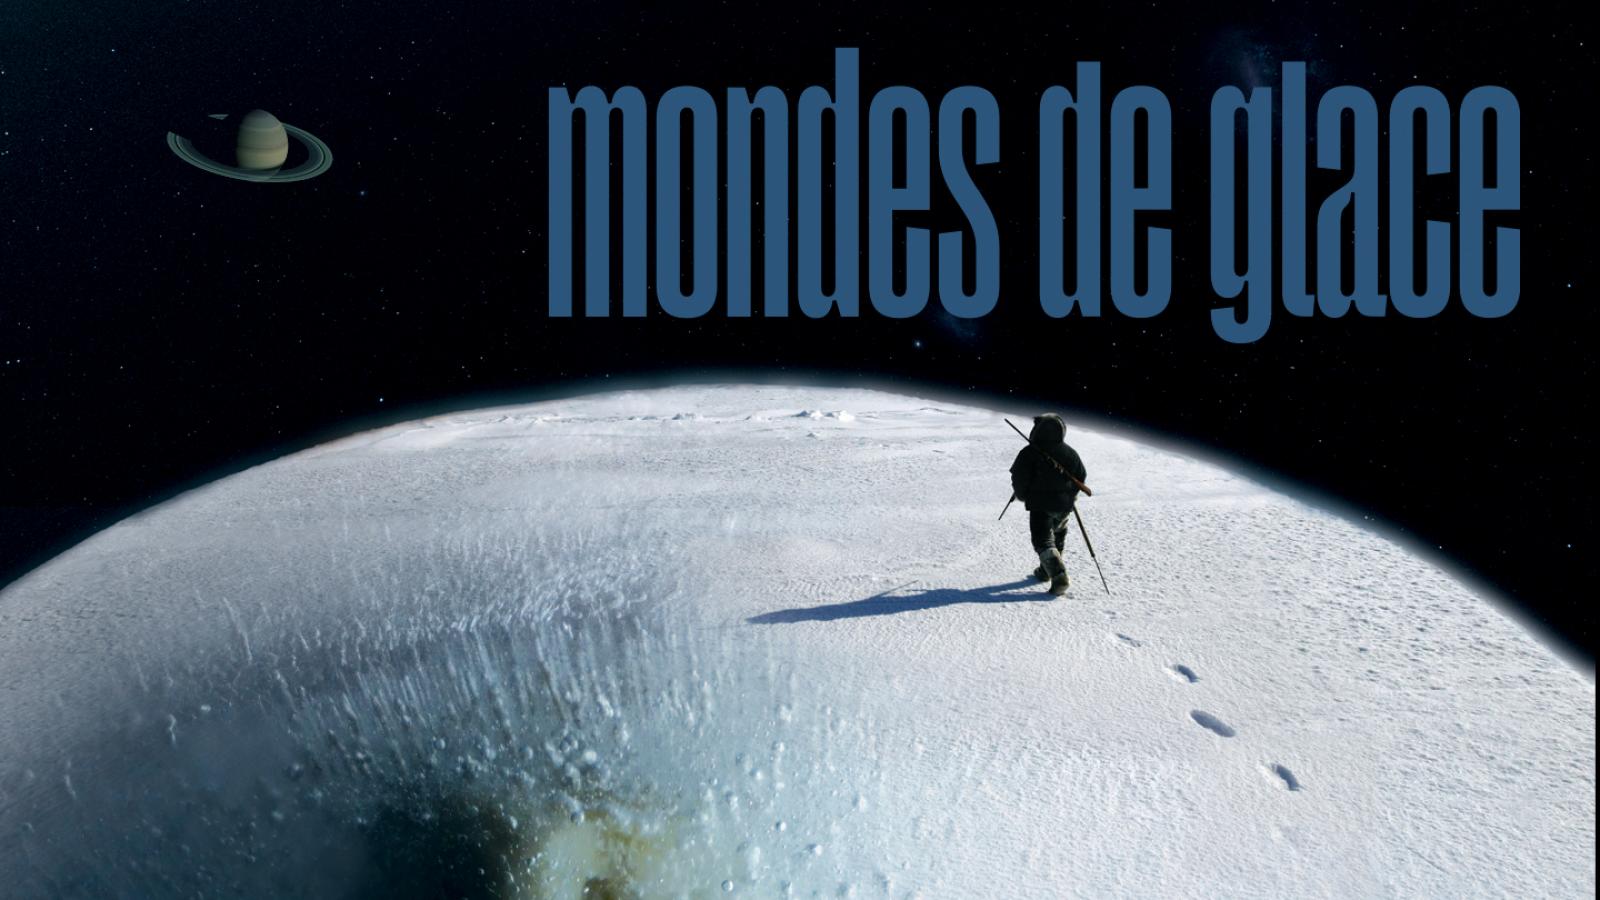 ASP_Mondes Des Glaces-banniere1440x810.jpg